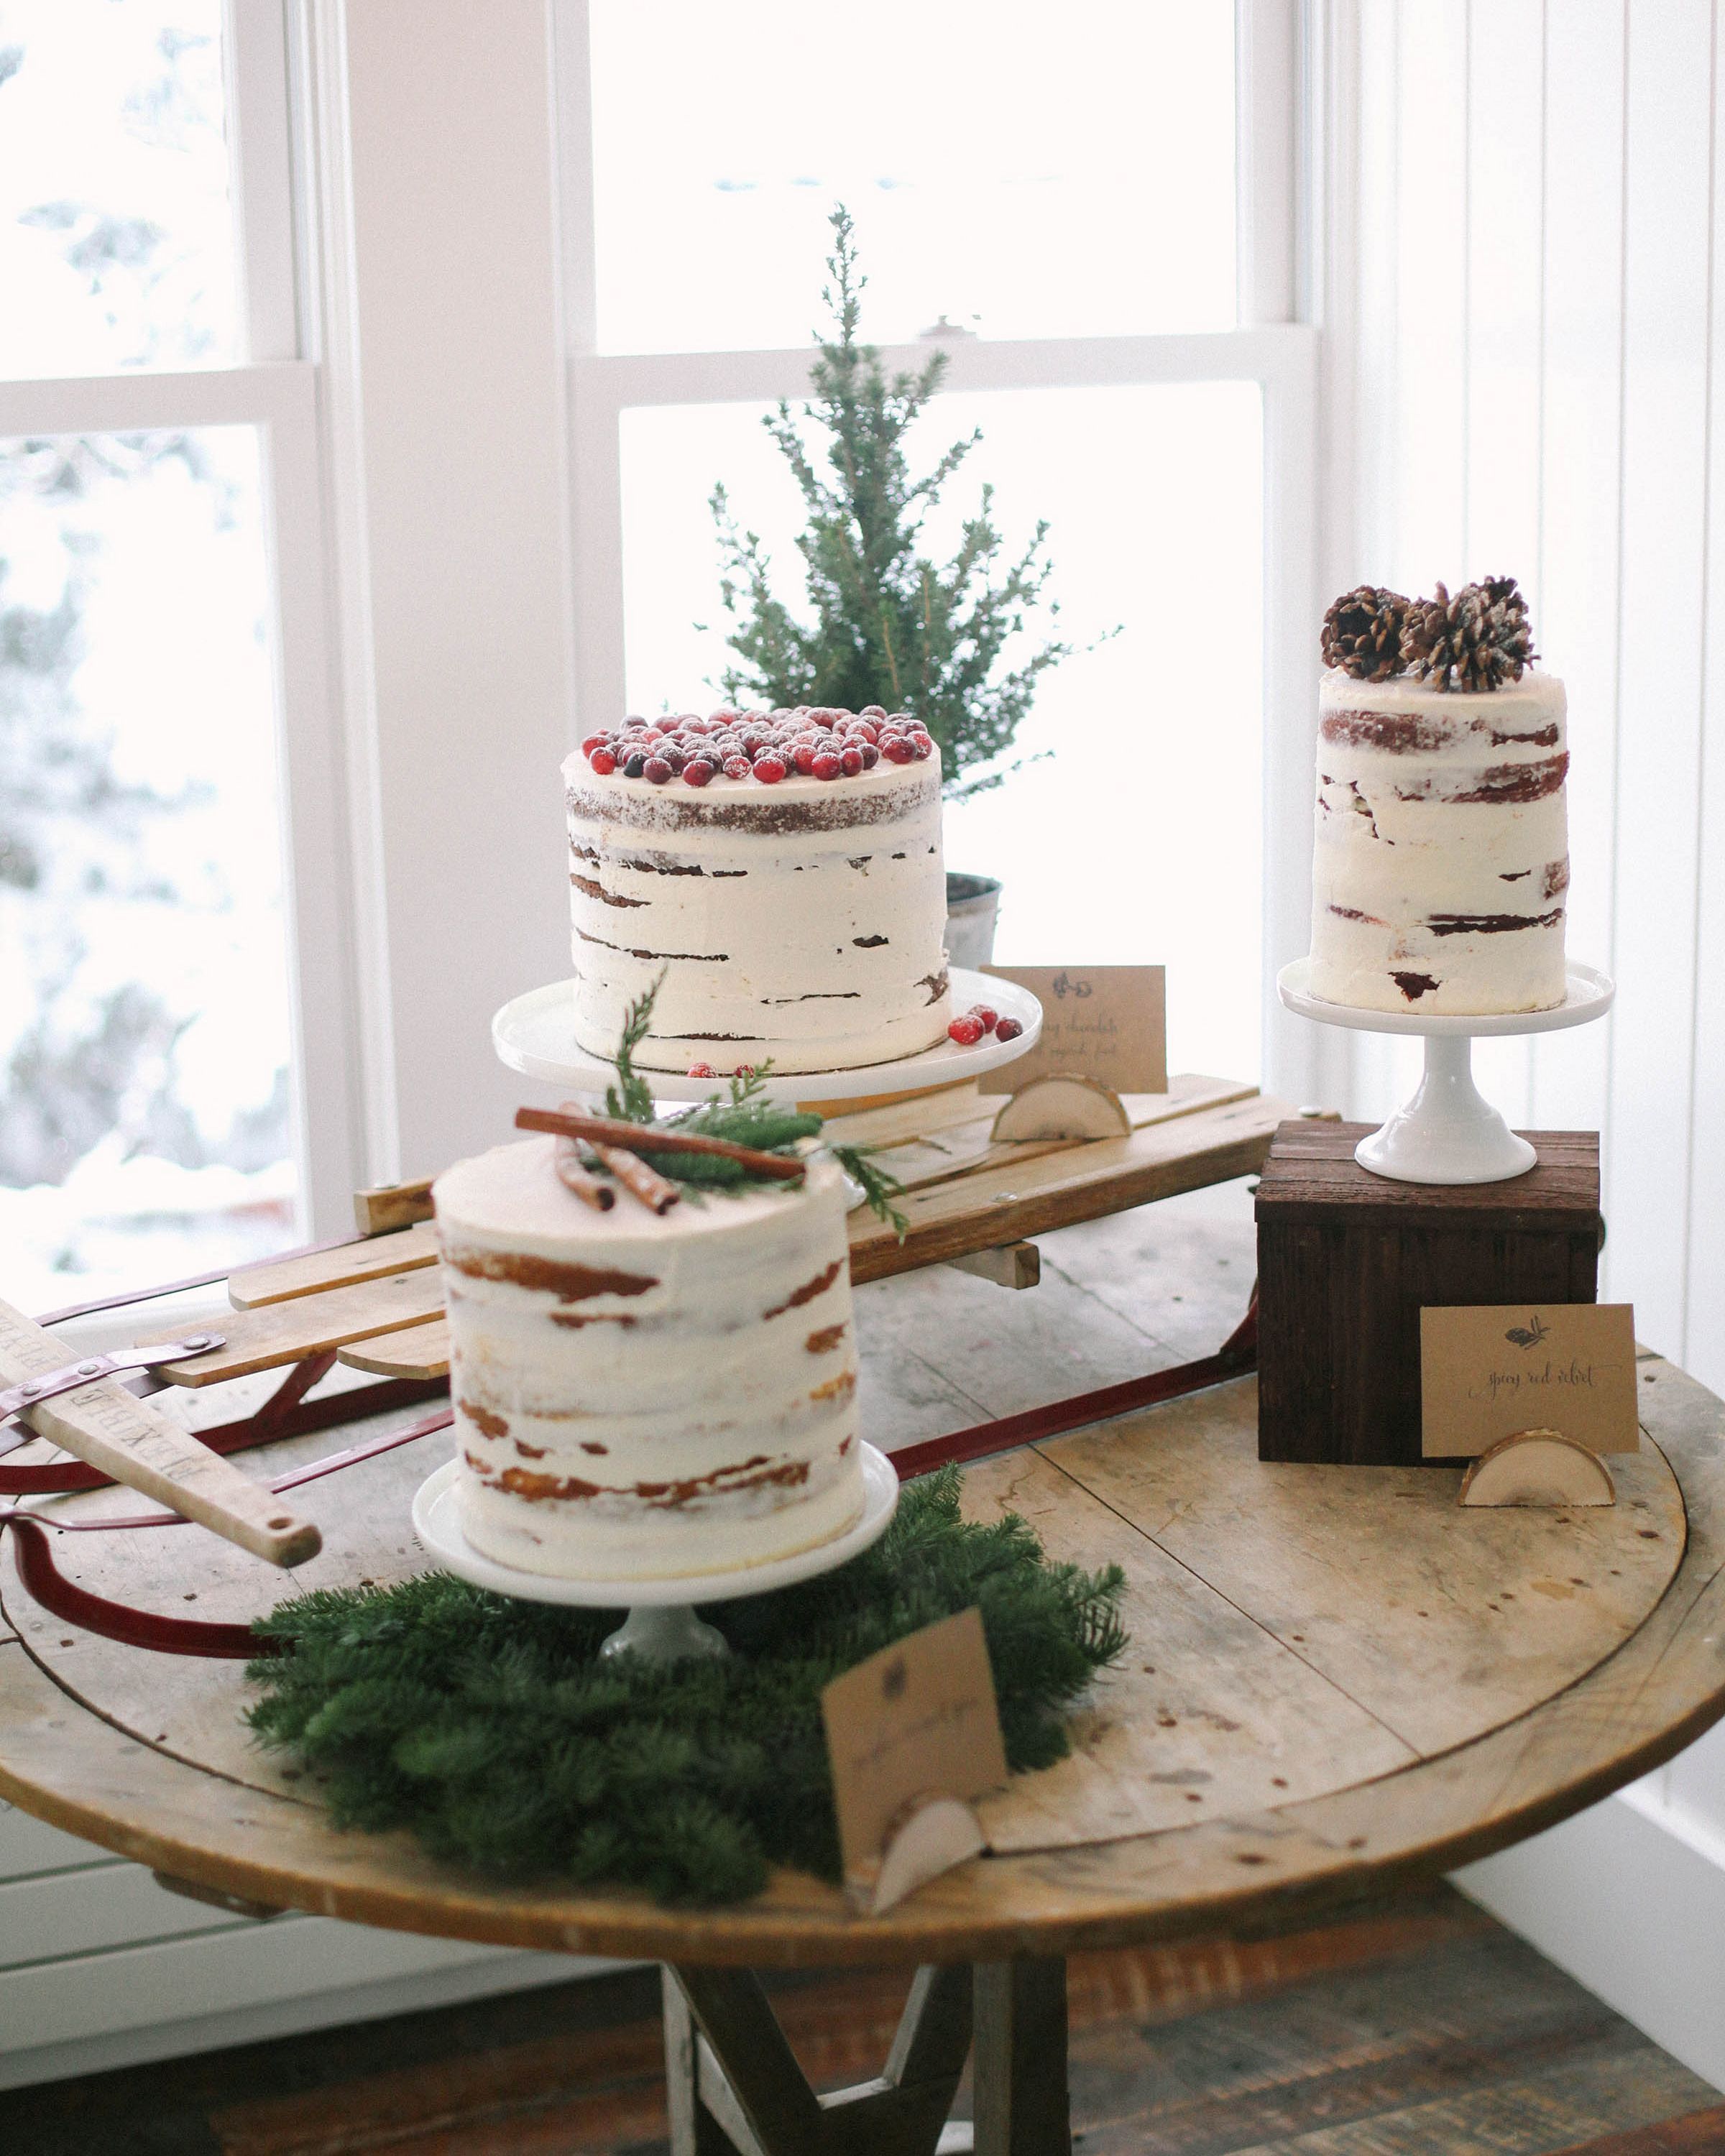 Christmas cake slice wedding cake from marthastewart